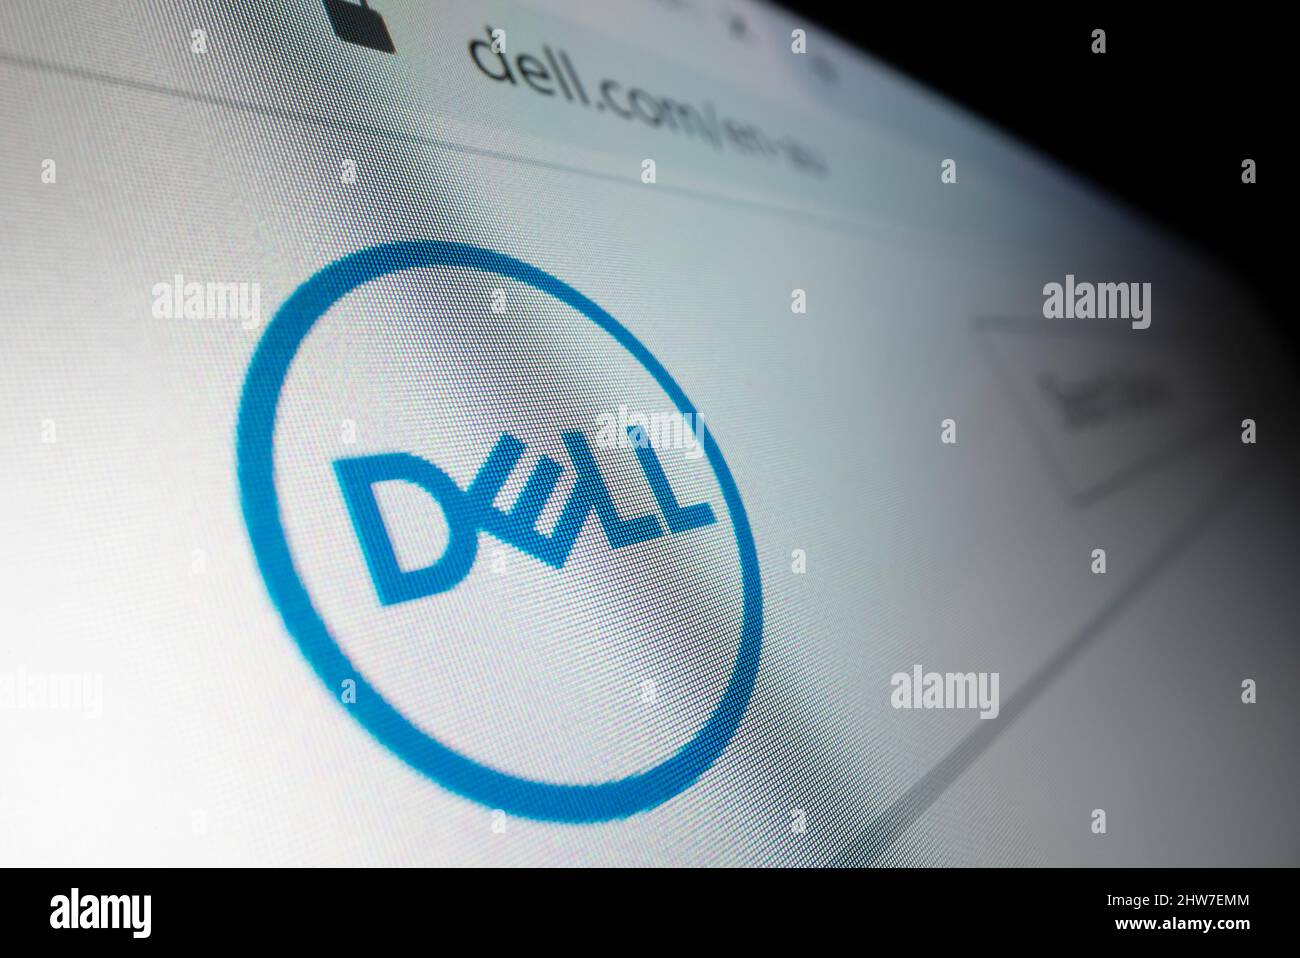 Melbourne, Australia - 8 de junio de 2021: Vista de cerca del logotipo de Dell en su sitio web, grabado con lente de sonda macro. Foto de stock